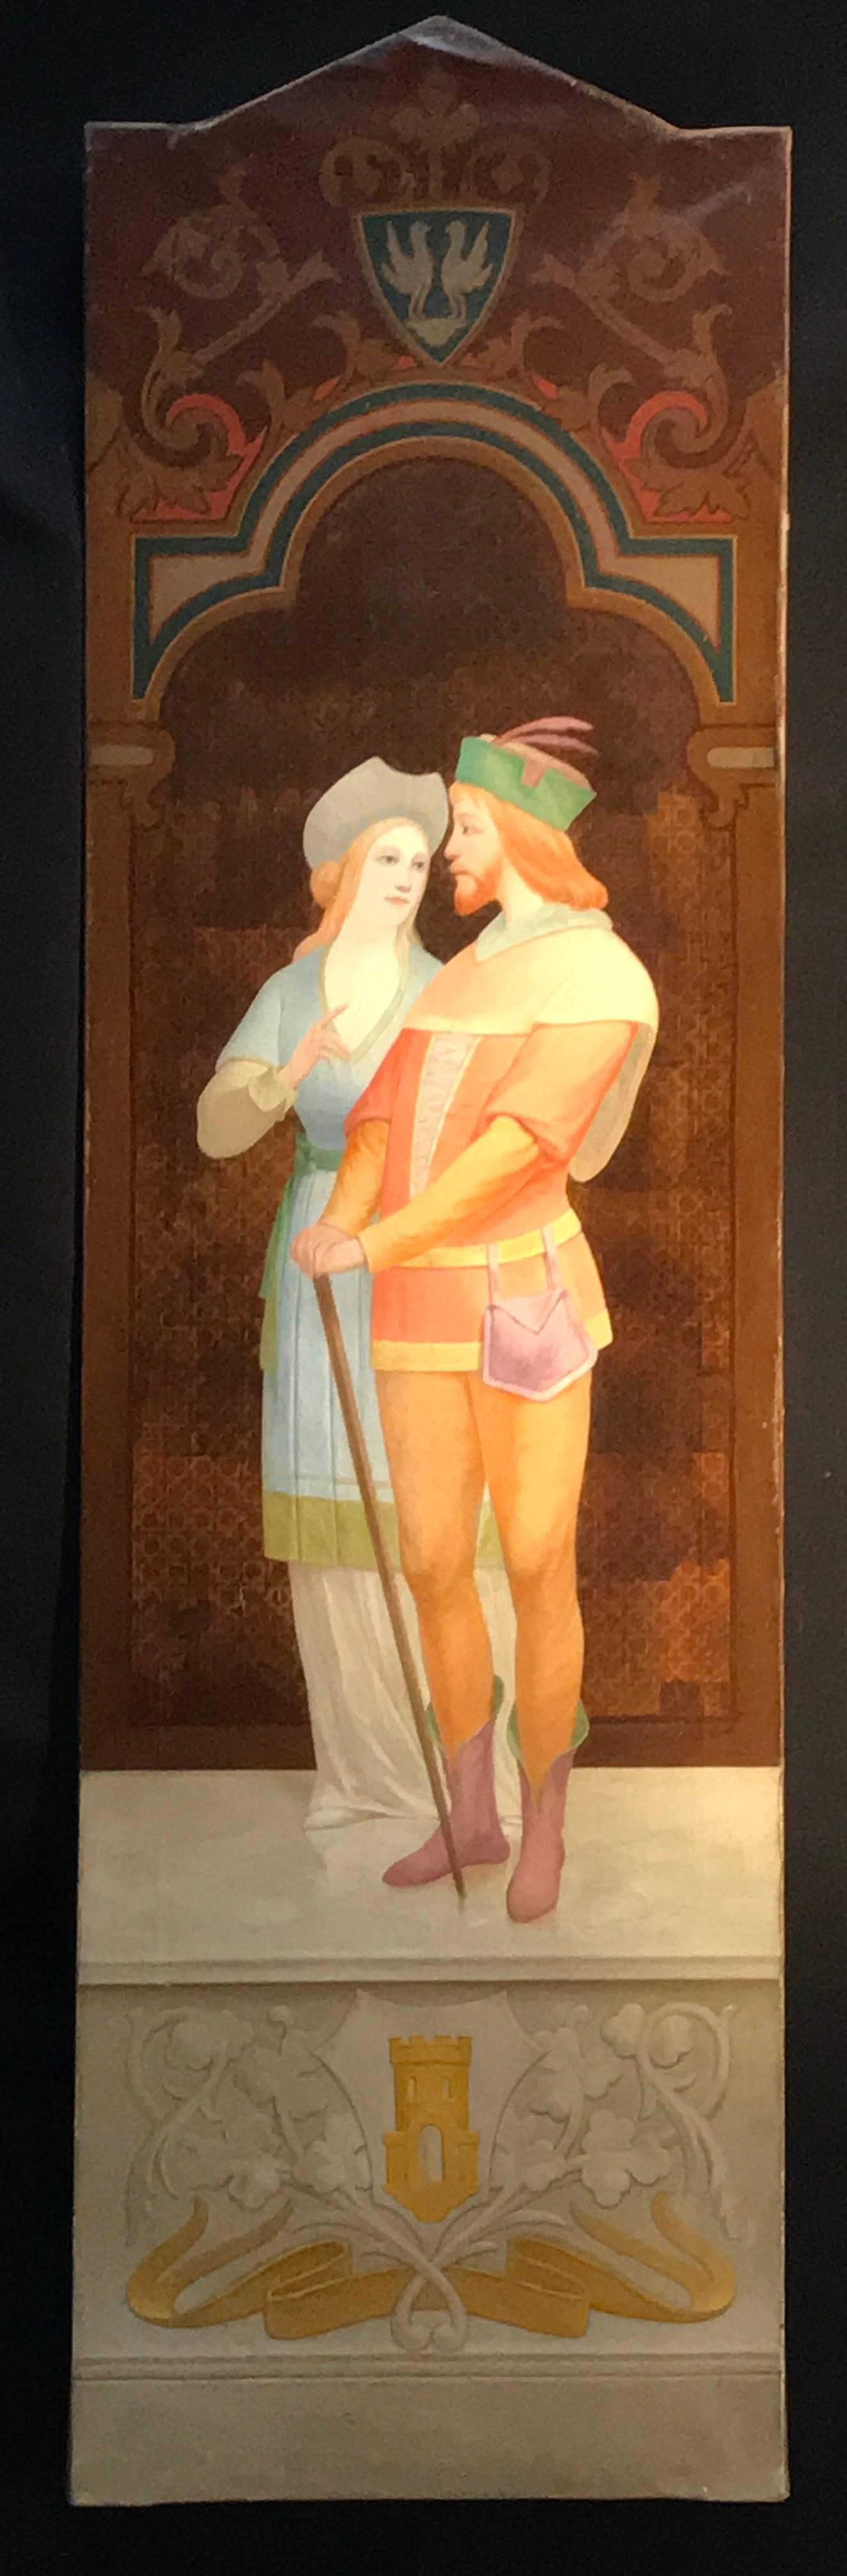 Unknown Portrait Painting - Very Large Original Oil Painting Renaissance Couple